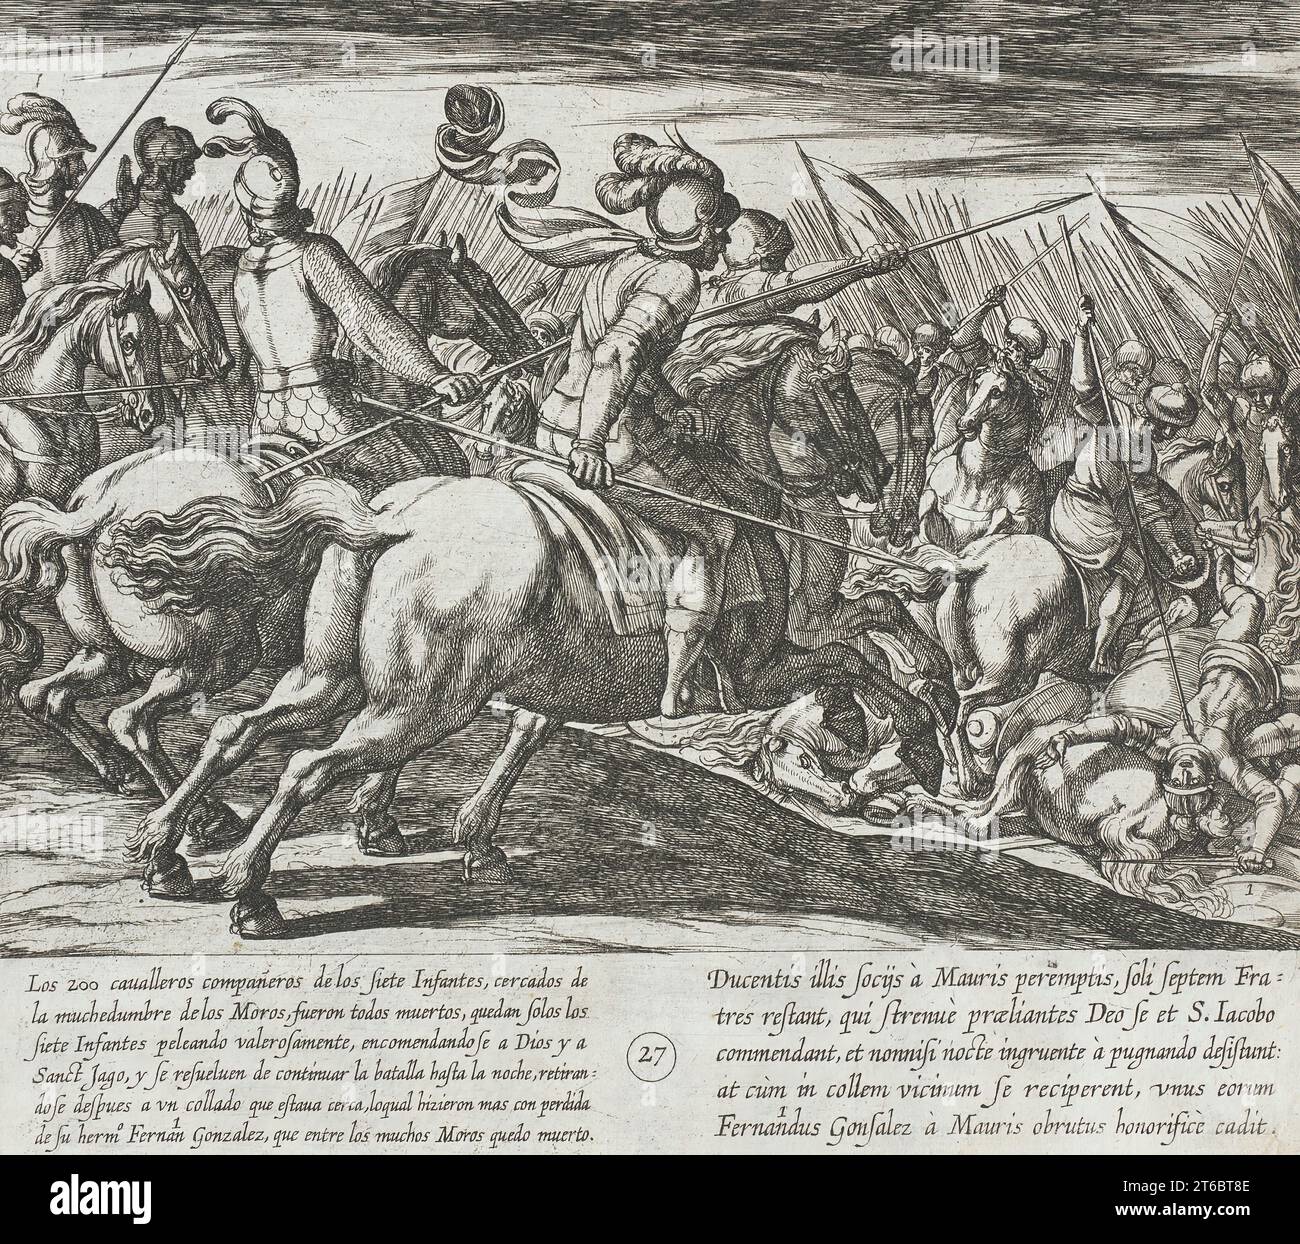 Tutti i Cavalieri che accompagnano gli Infantes vengono uccisi, così come l'Infante Fernan Gonzalez, 1612. Dalla storia dei sette figli di Lara, PL. 27. Foto Stock